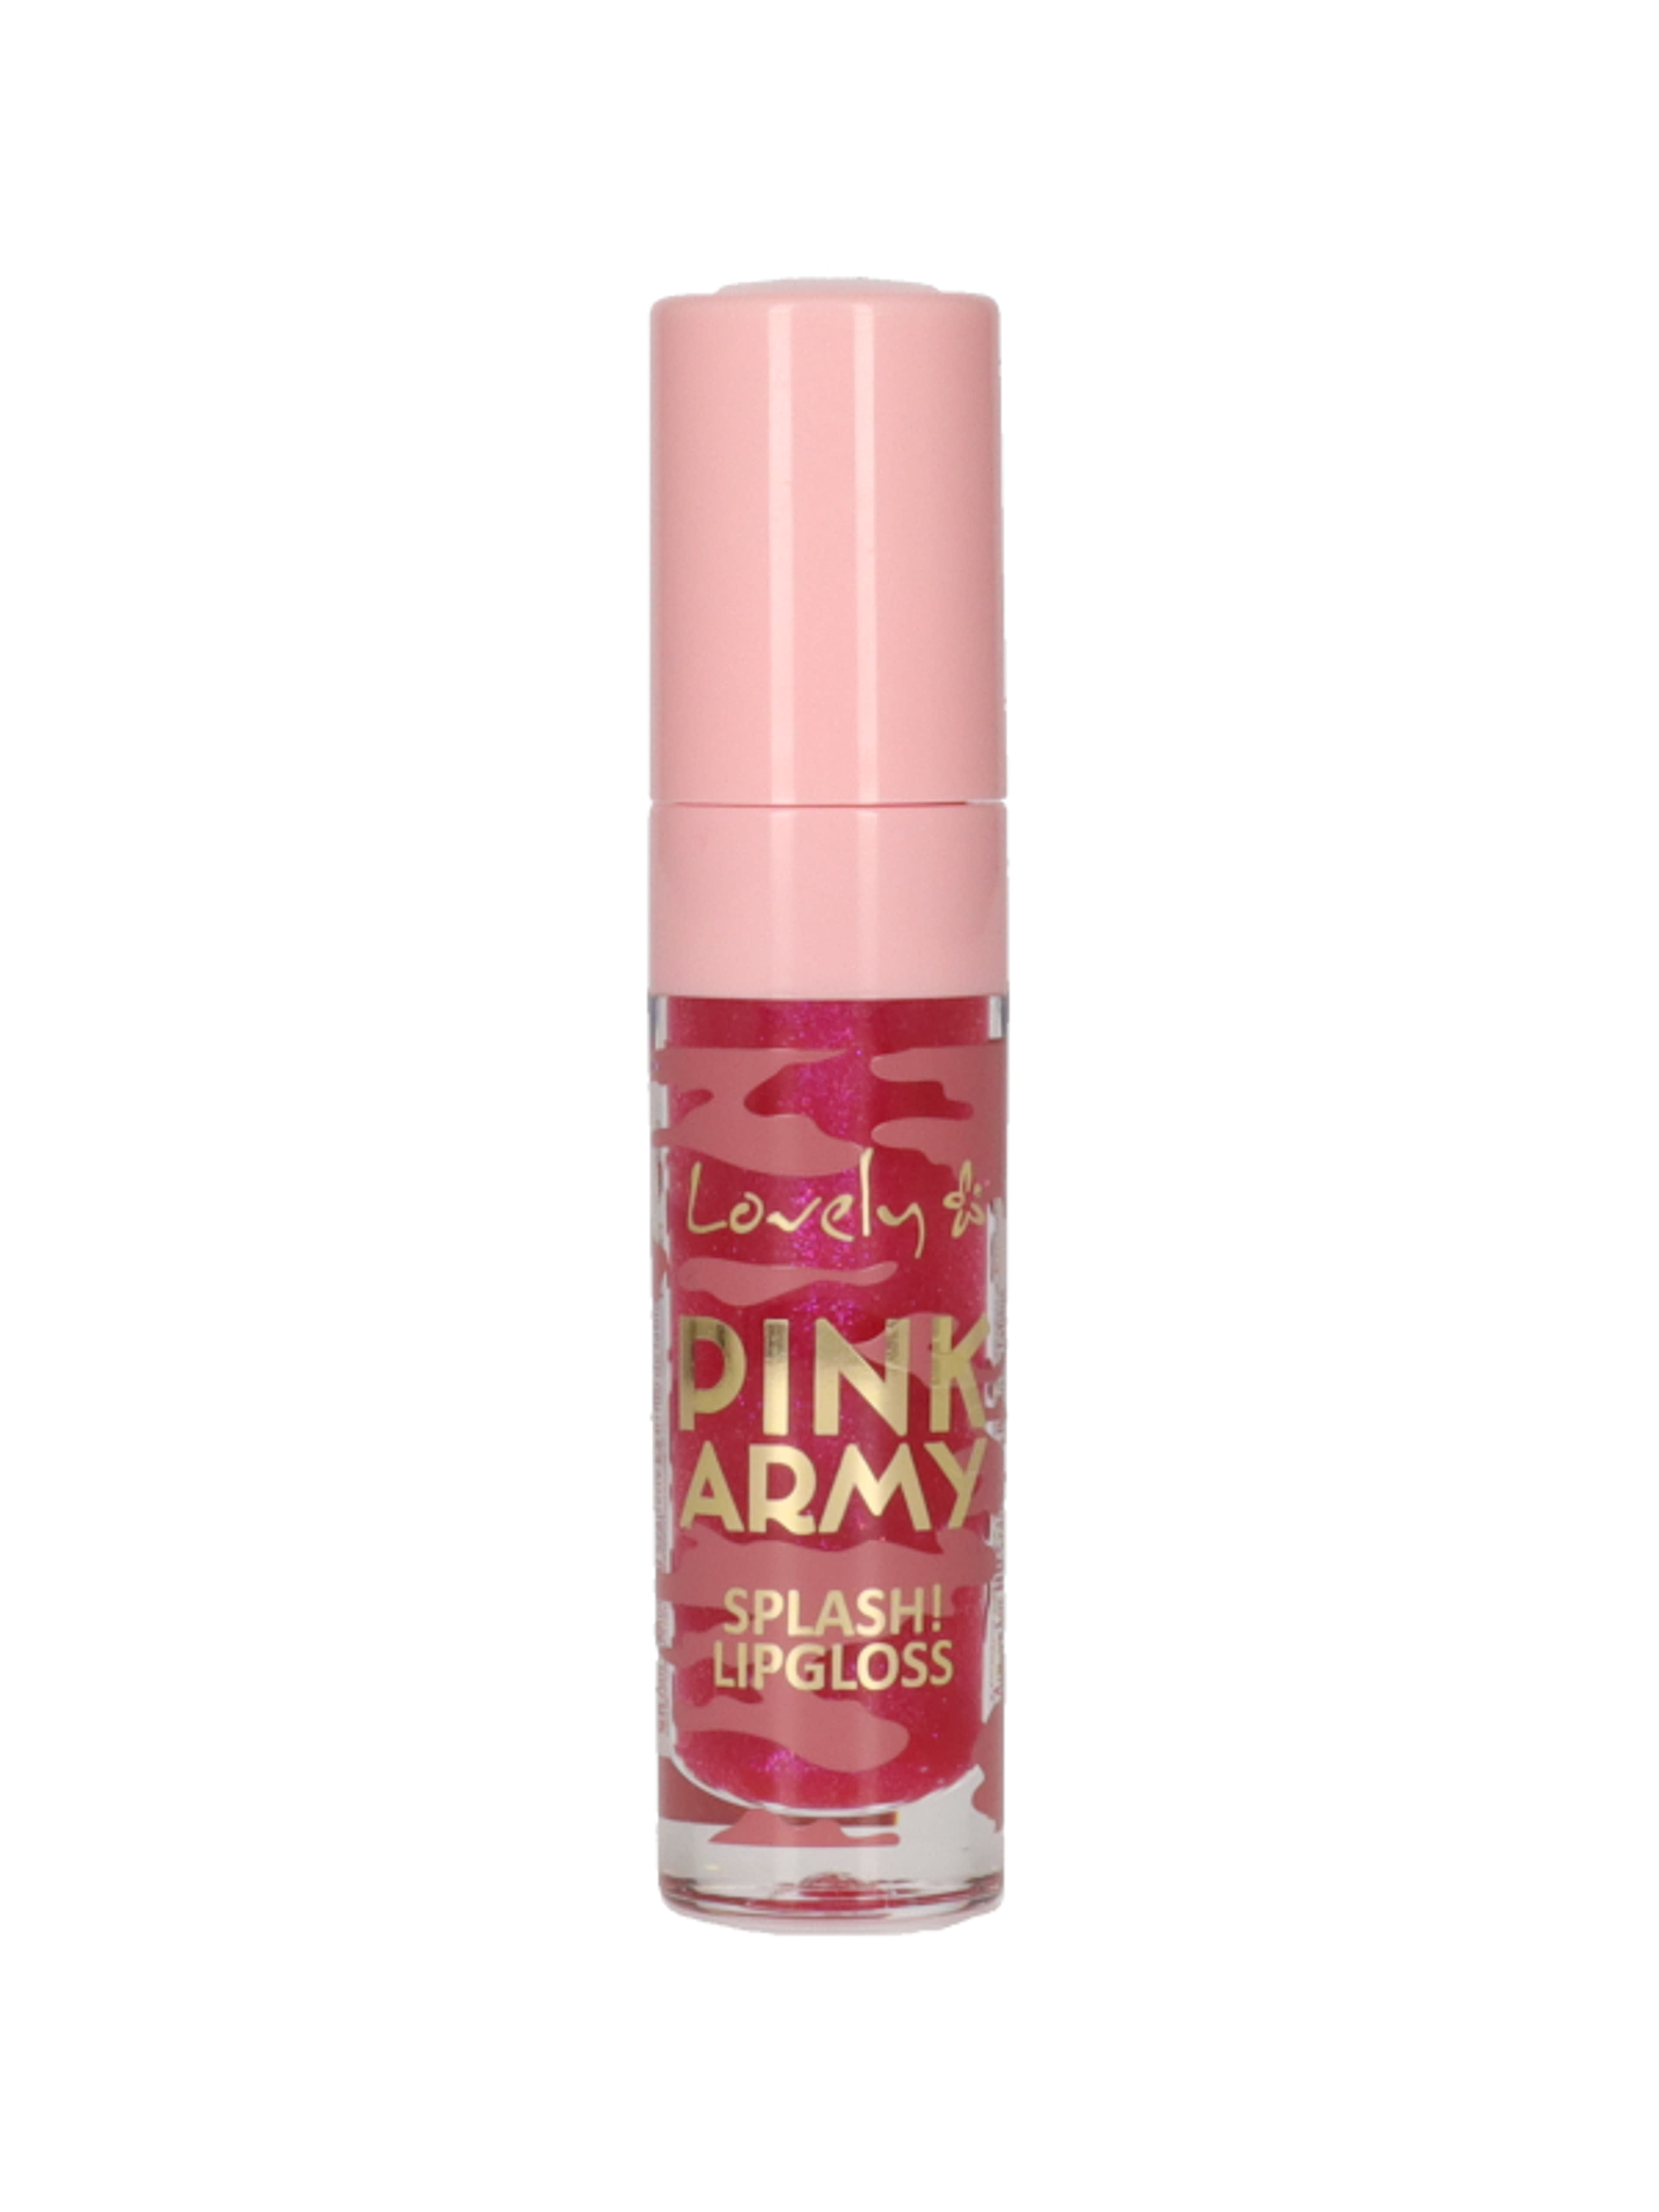 Lovely Splash! Pink Army szájfény nr/1 - 1 db